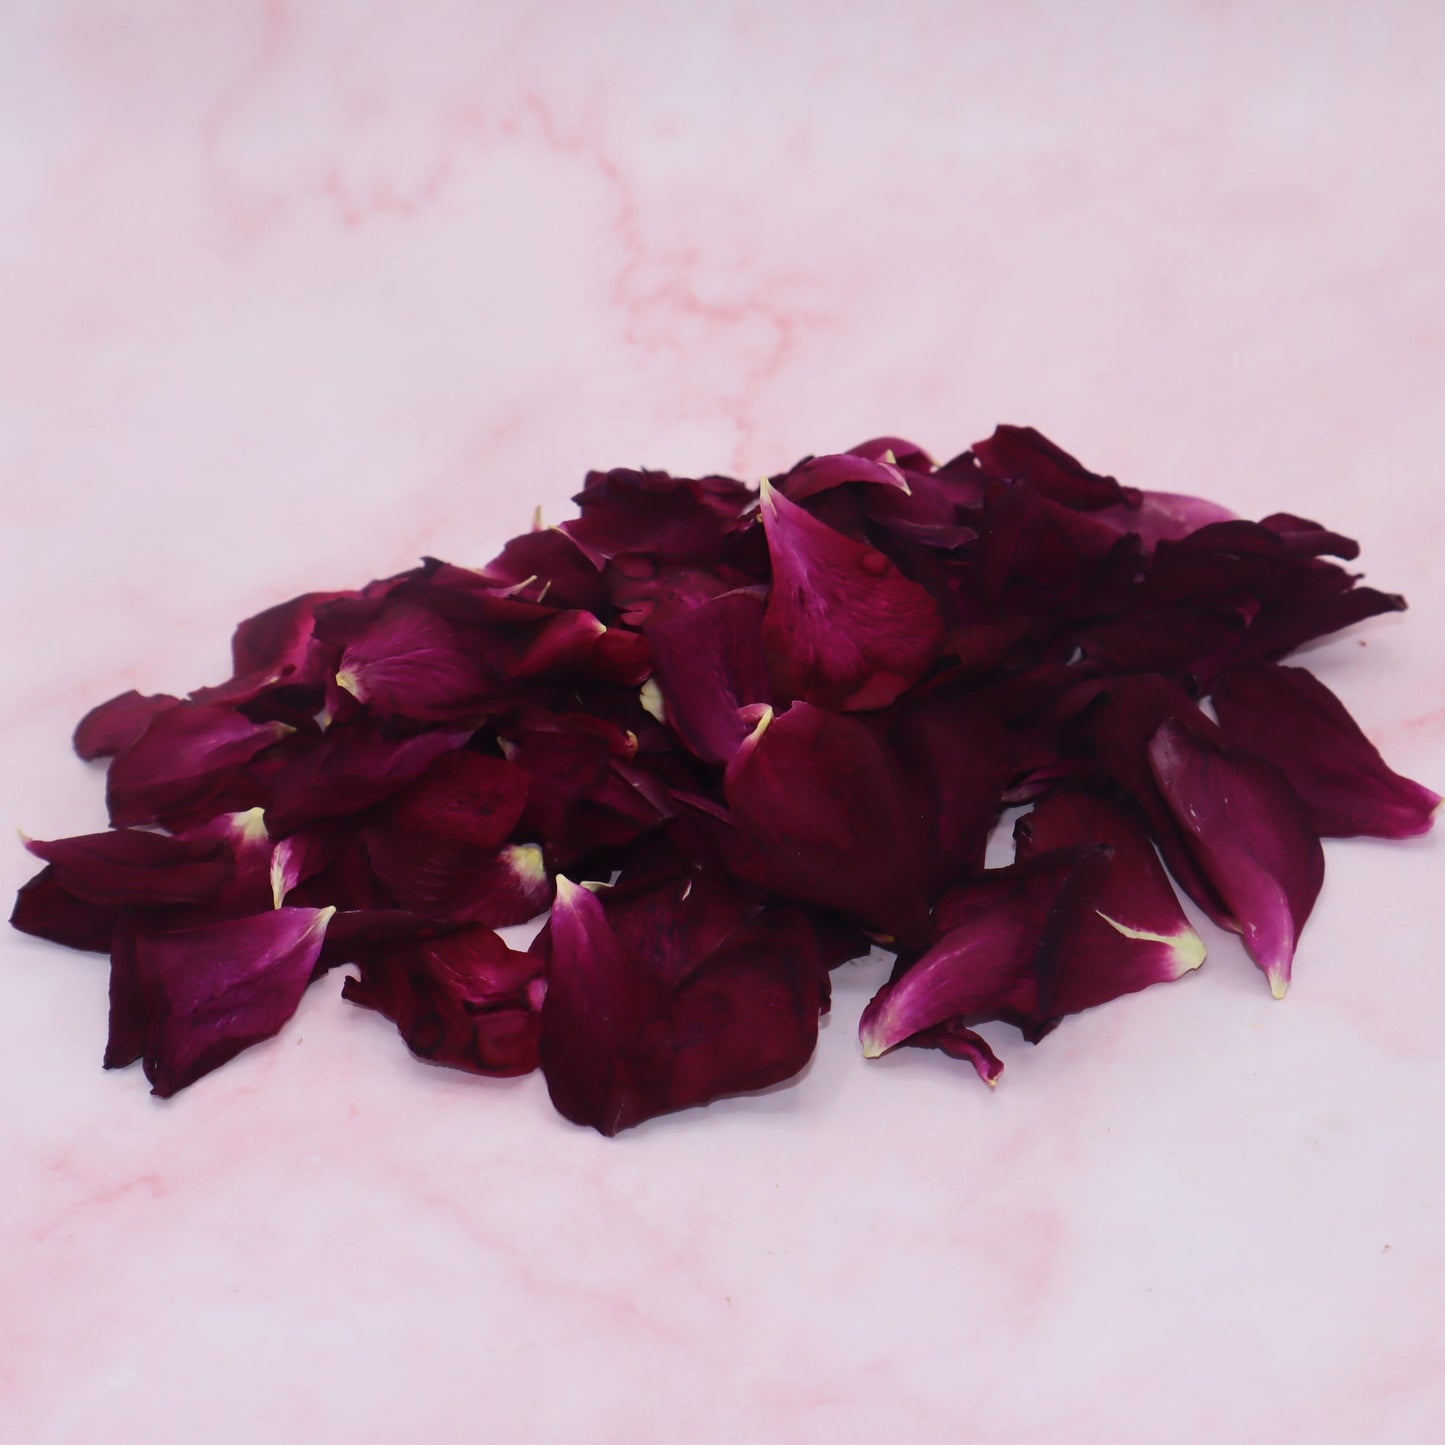 gevriesdroogde rozenblaadjes. Freeze dried edible rose petals. eetbare bloemen. Floral Delight shop